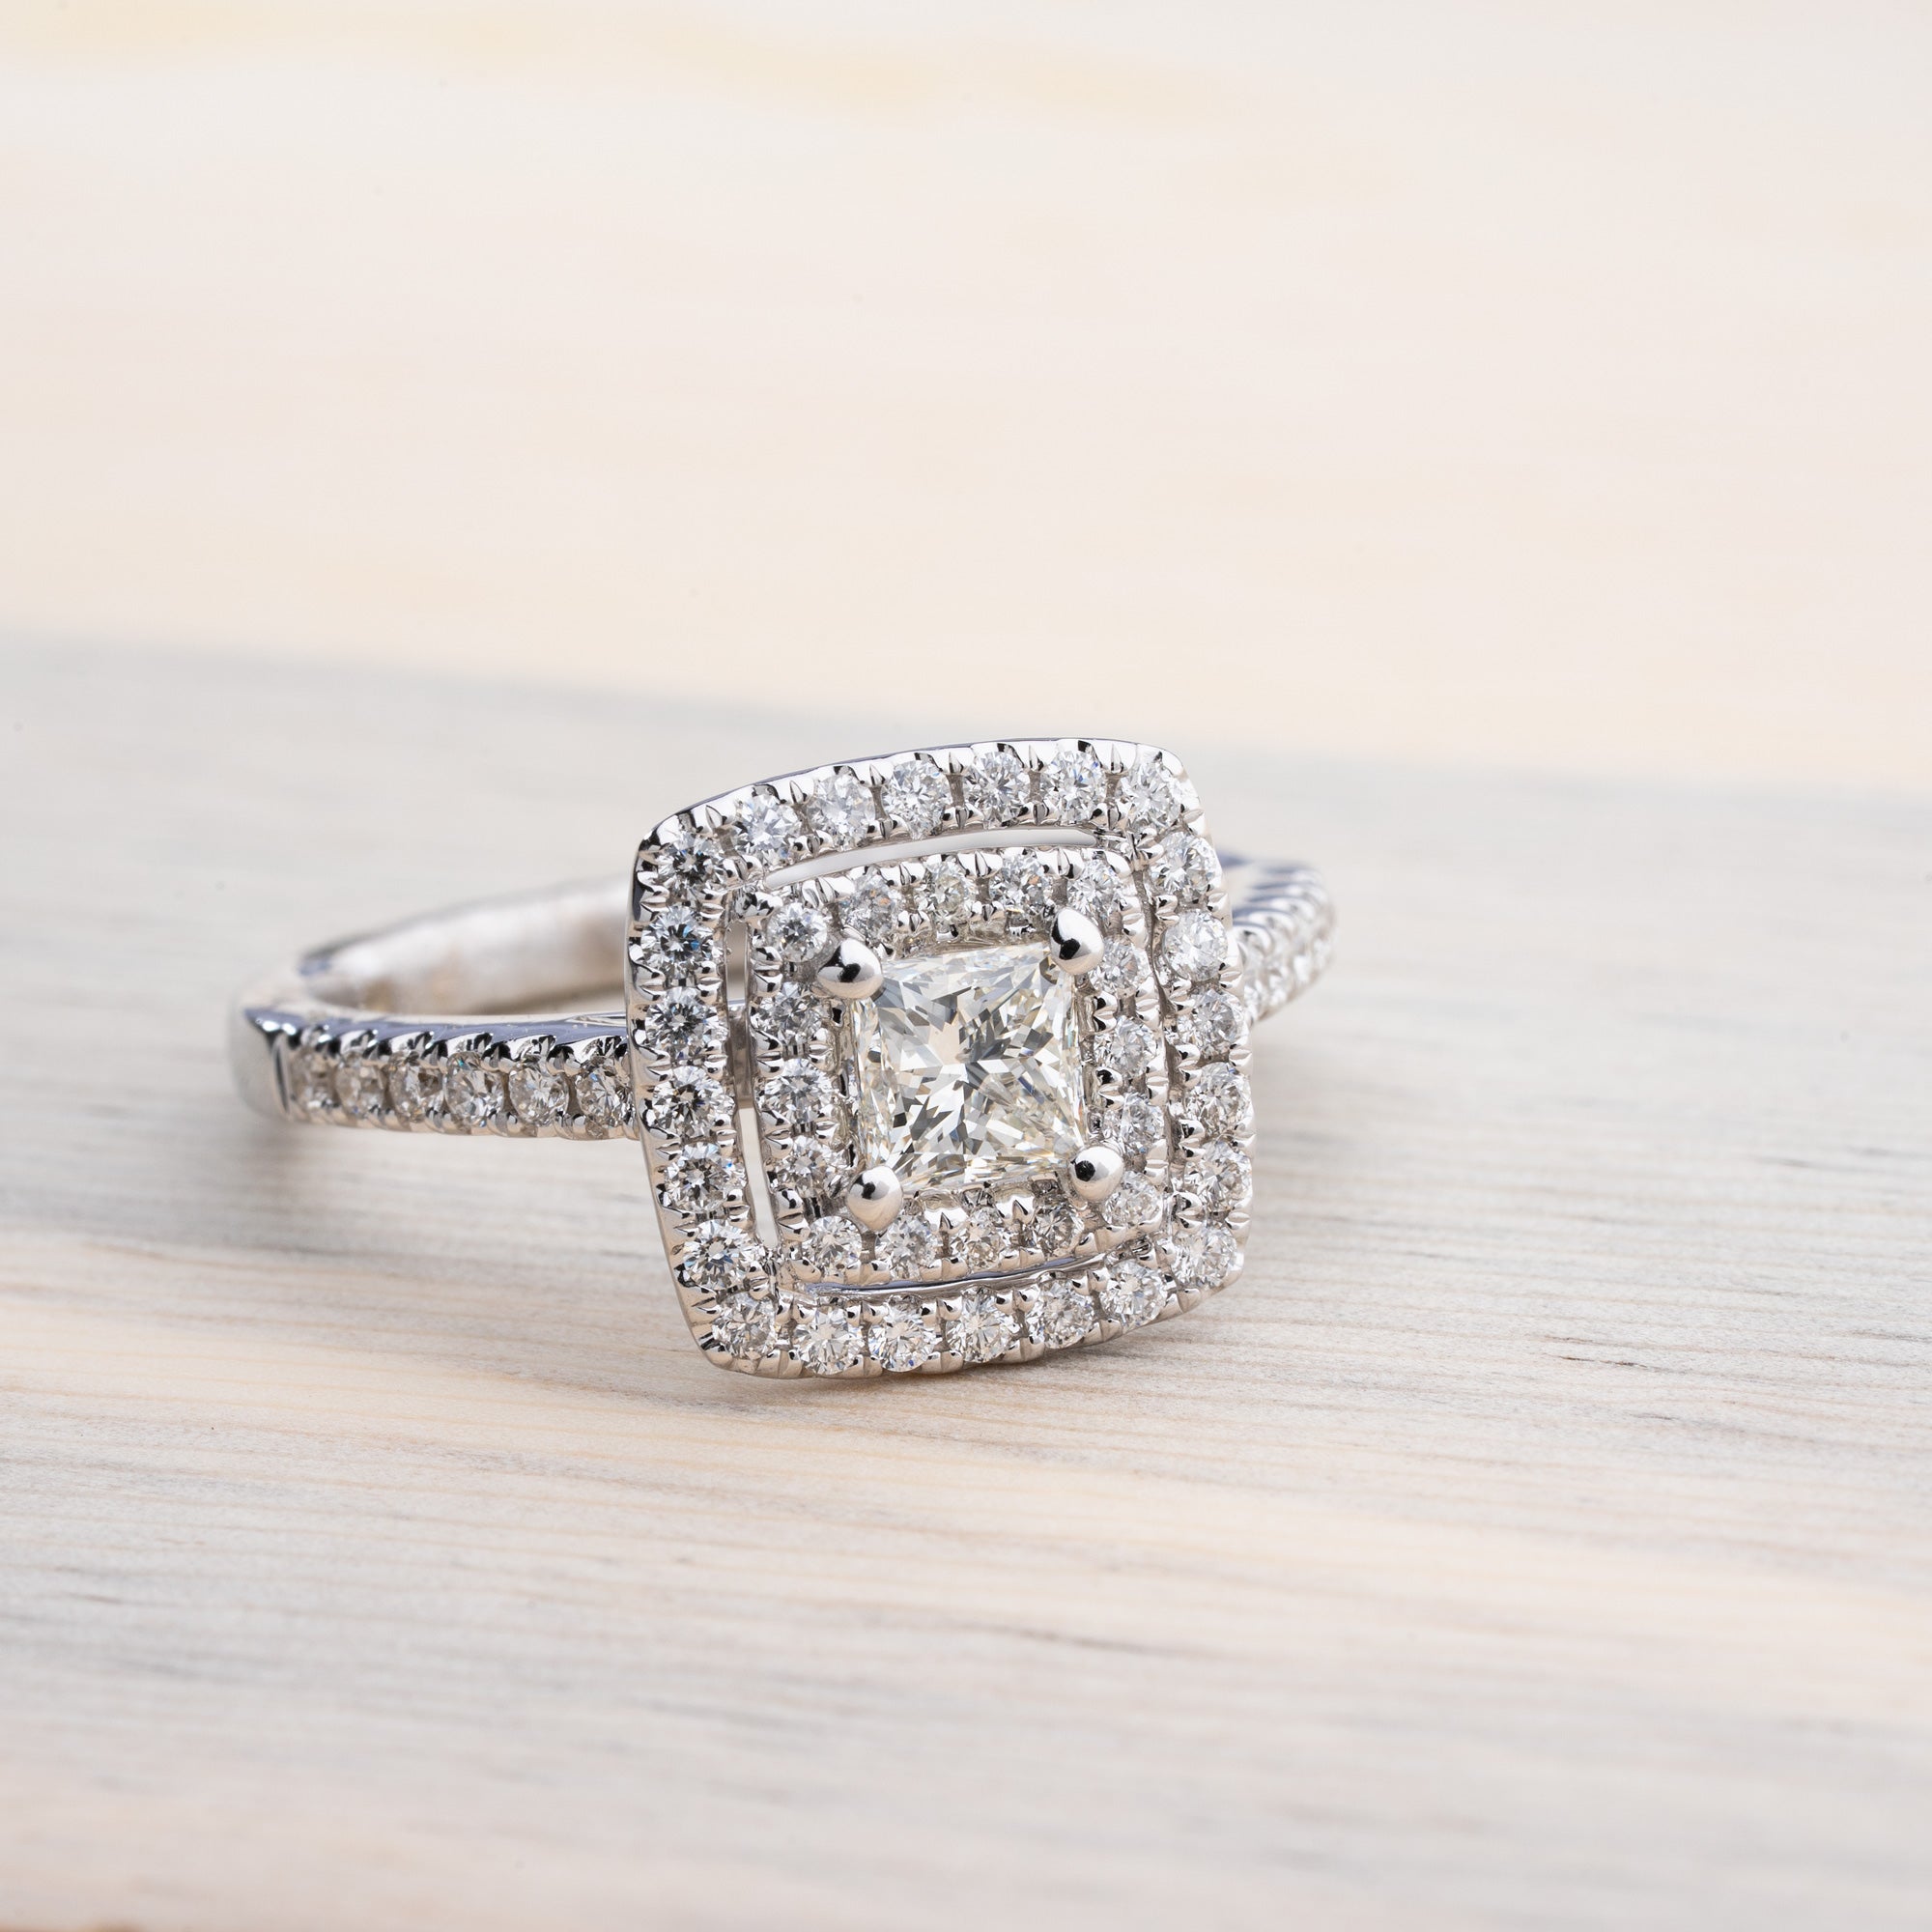 Bead Set Princess Cut Diamond Ring .30 Cttw 14K Gold 200A